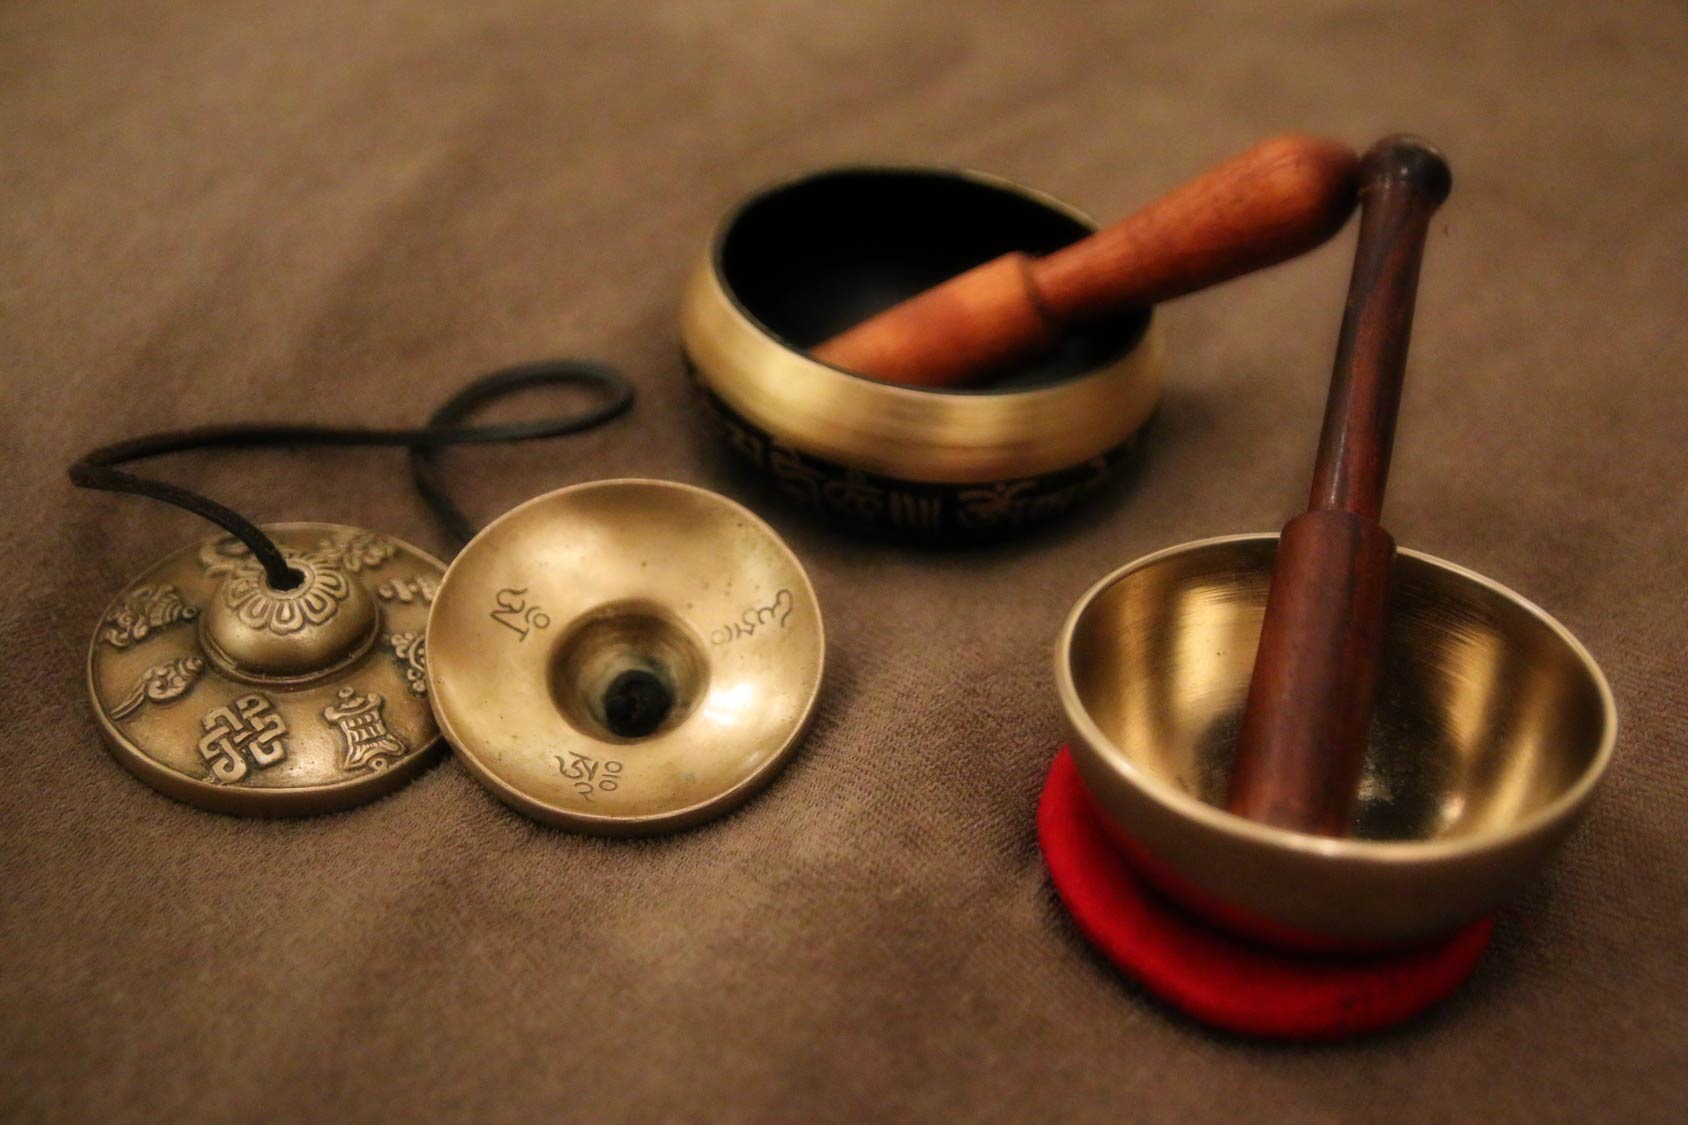 Tibetan sound bowls